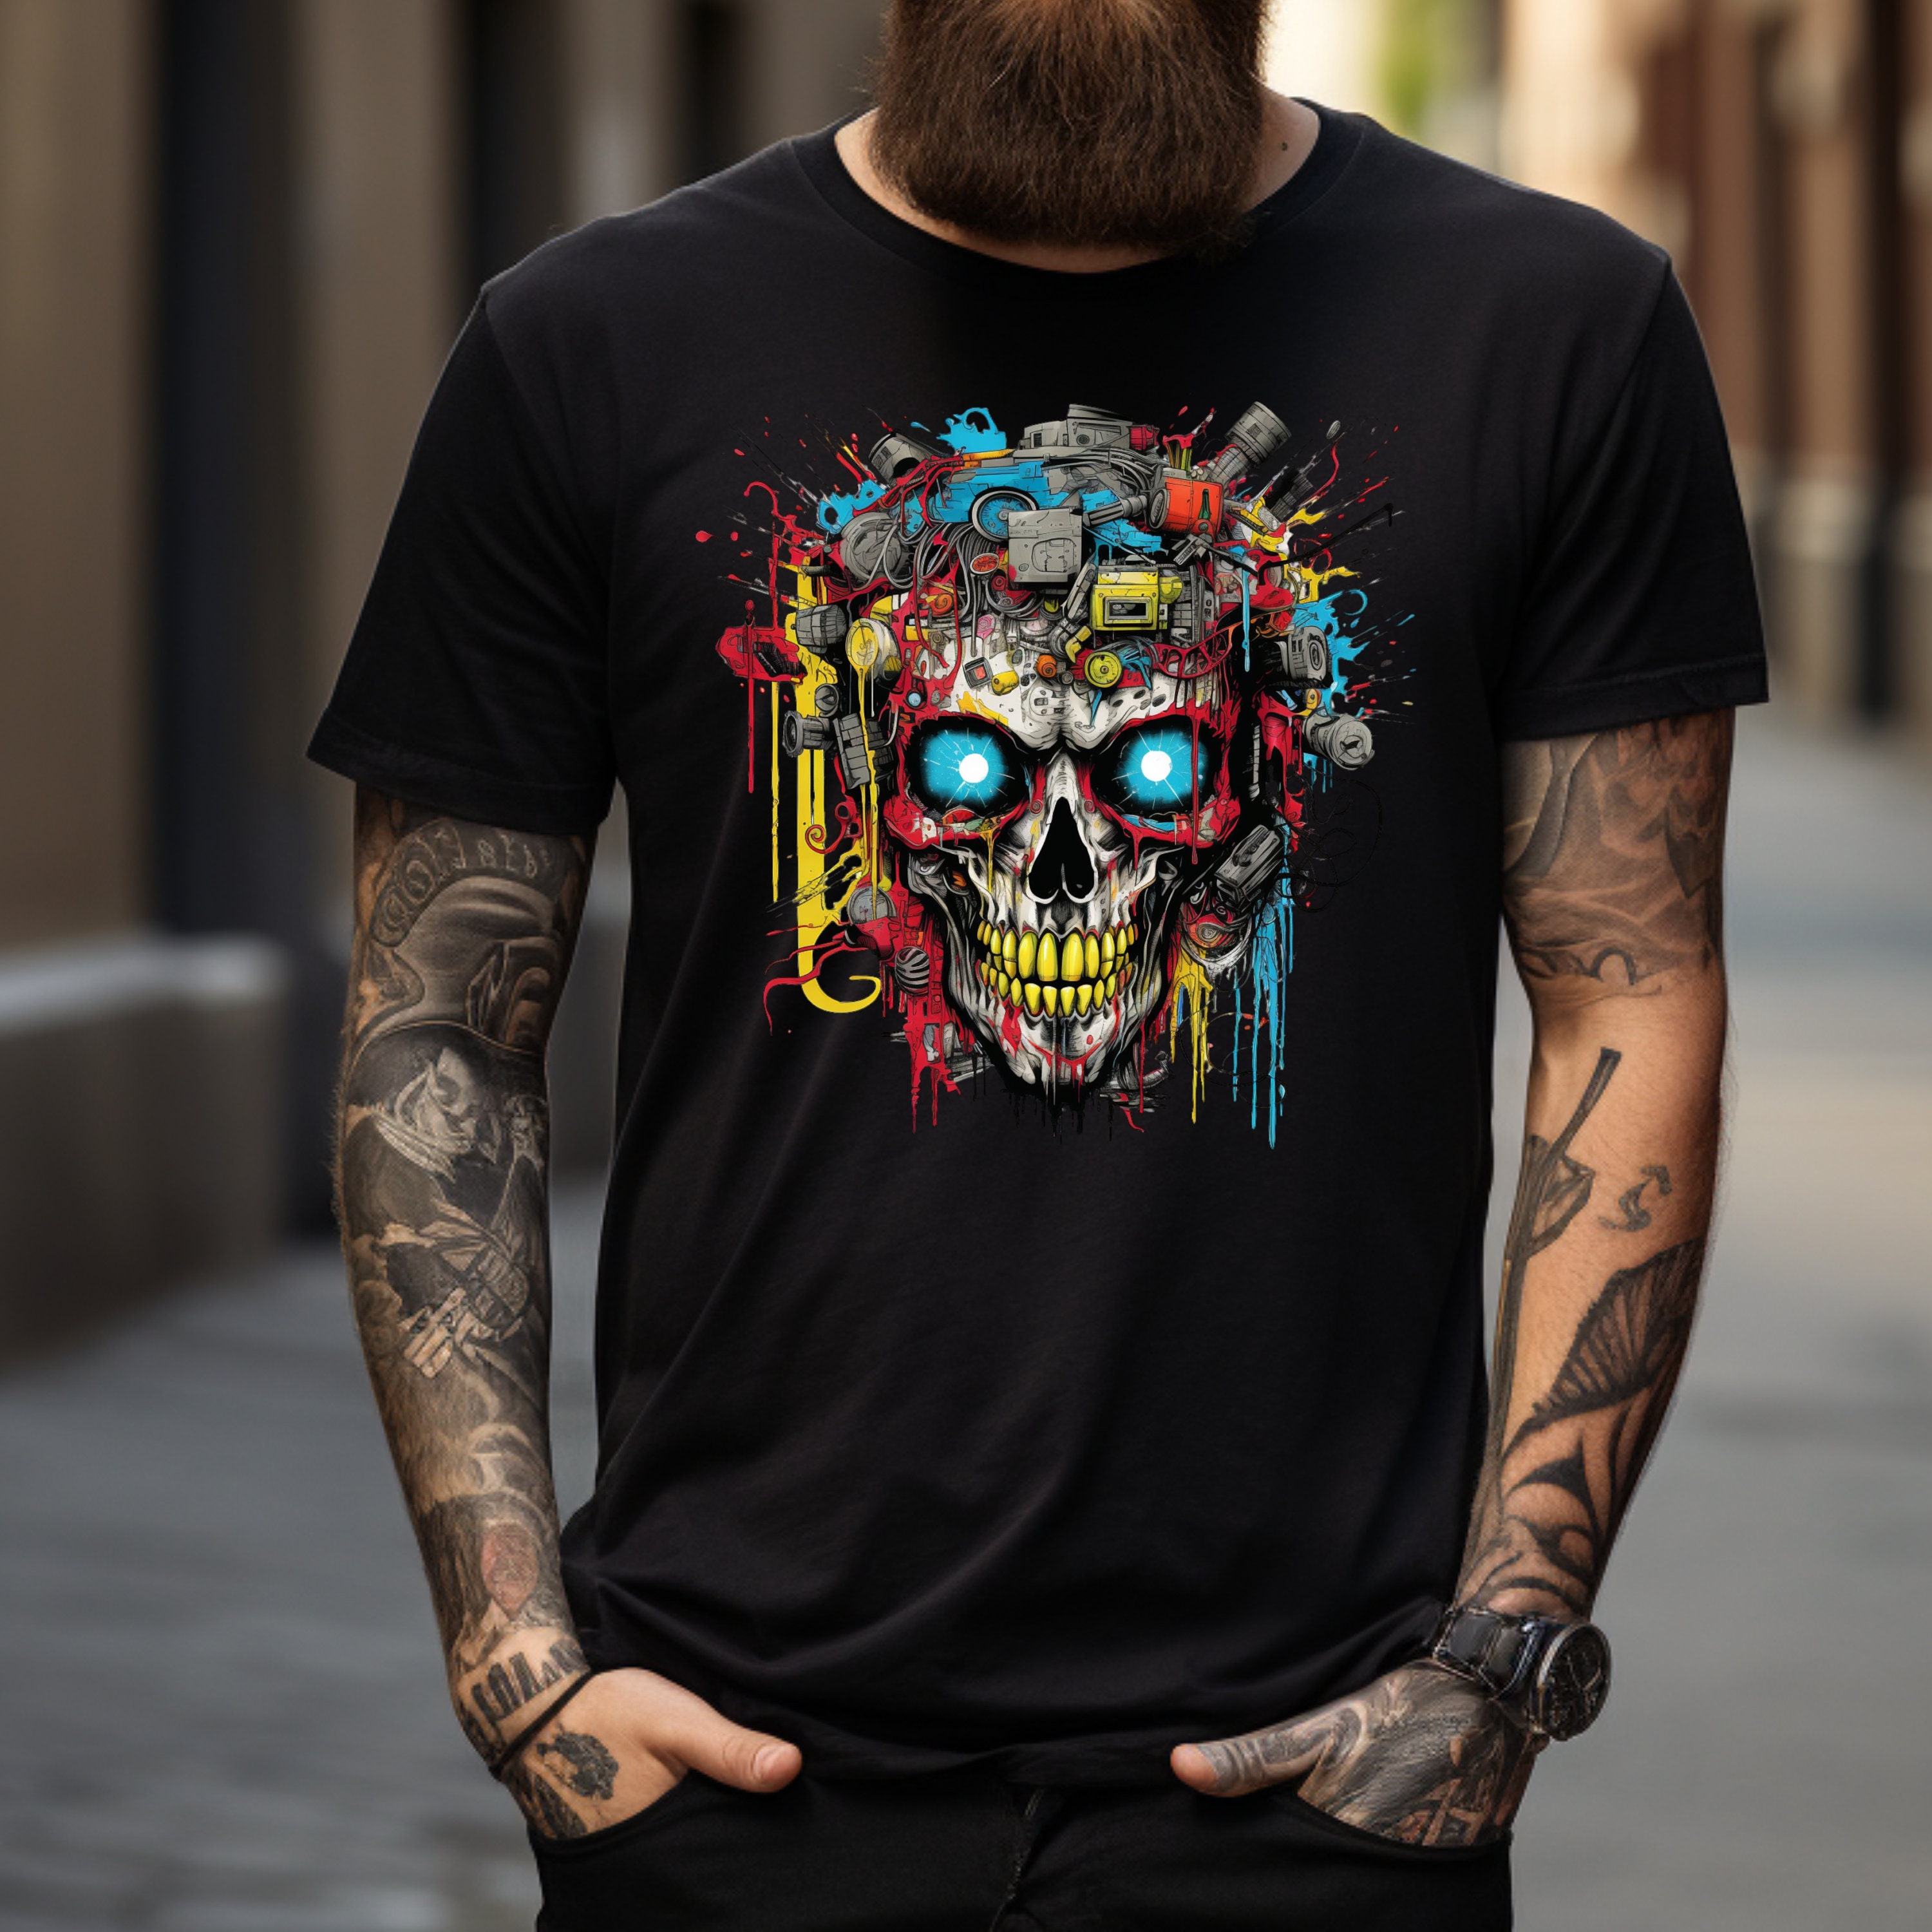 Damen Shirt mit Totenkopf - Camo-Skull, Damen Shirts & Tops, Spiral  Gothic, Kleidung, Gothic-Shop